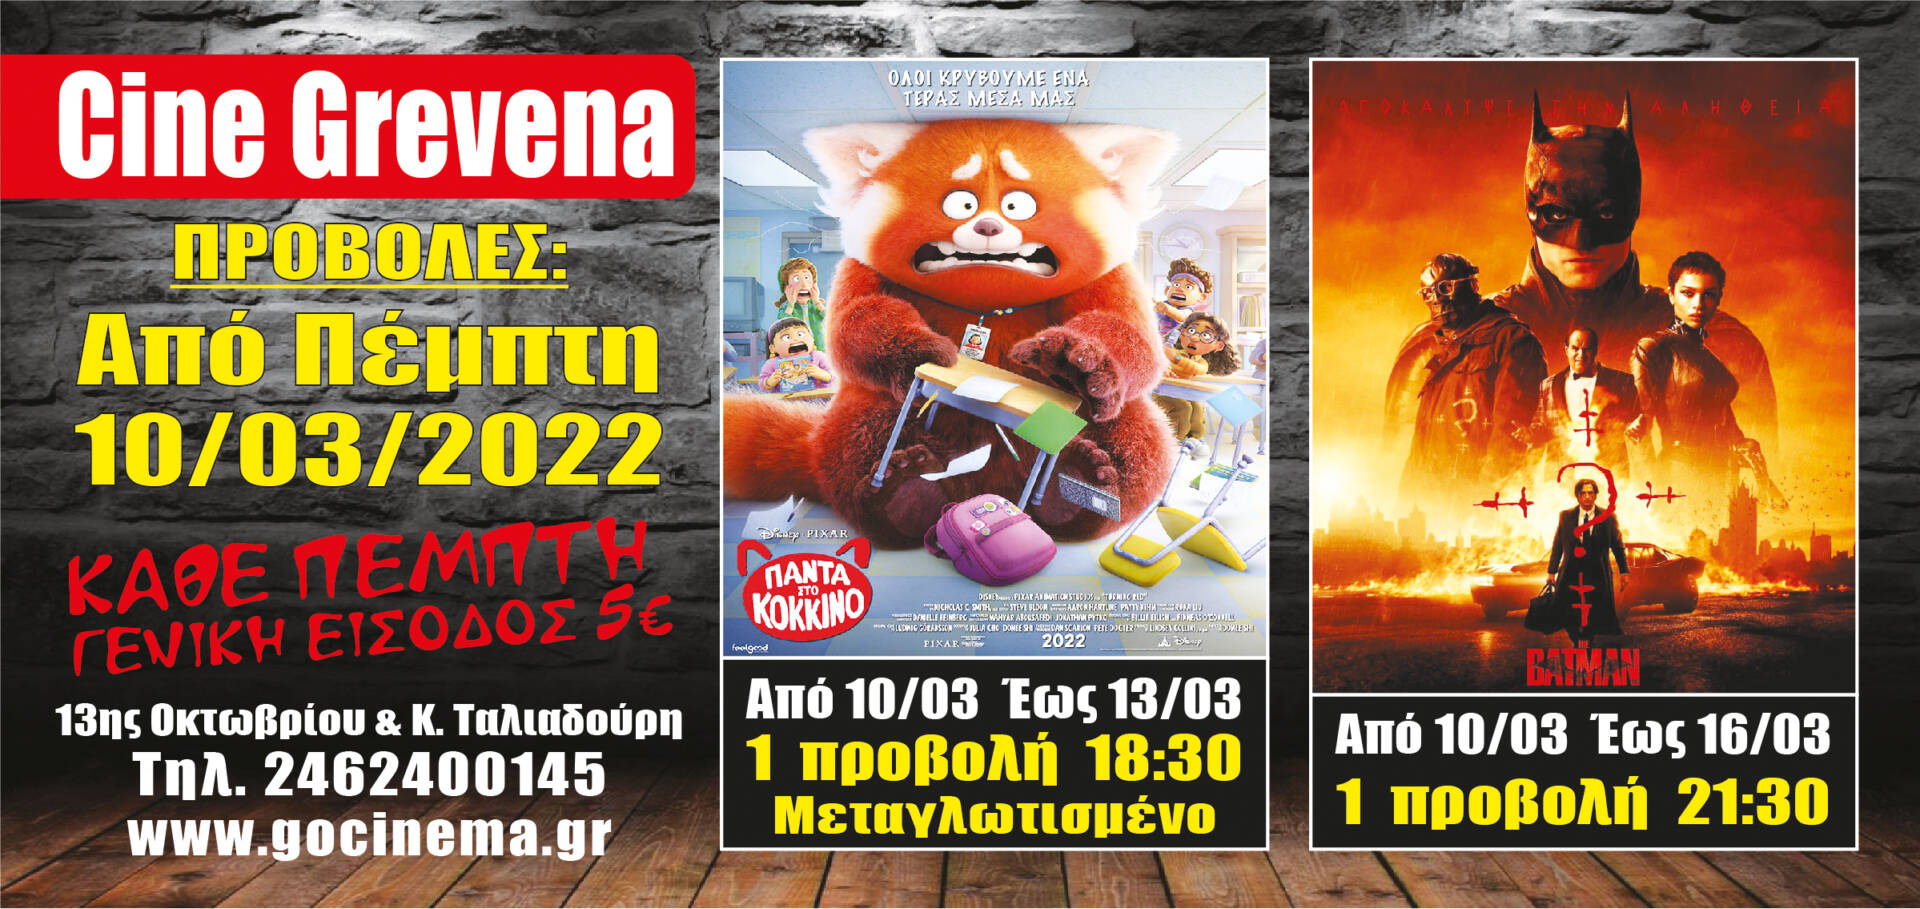 Νέα κινηματογραφική εβδομάδα στο Cine Grevena